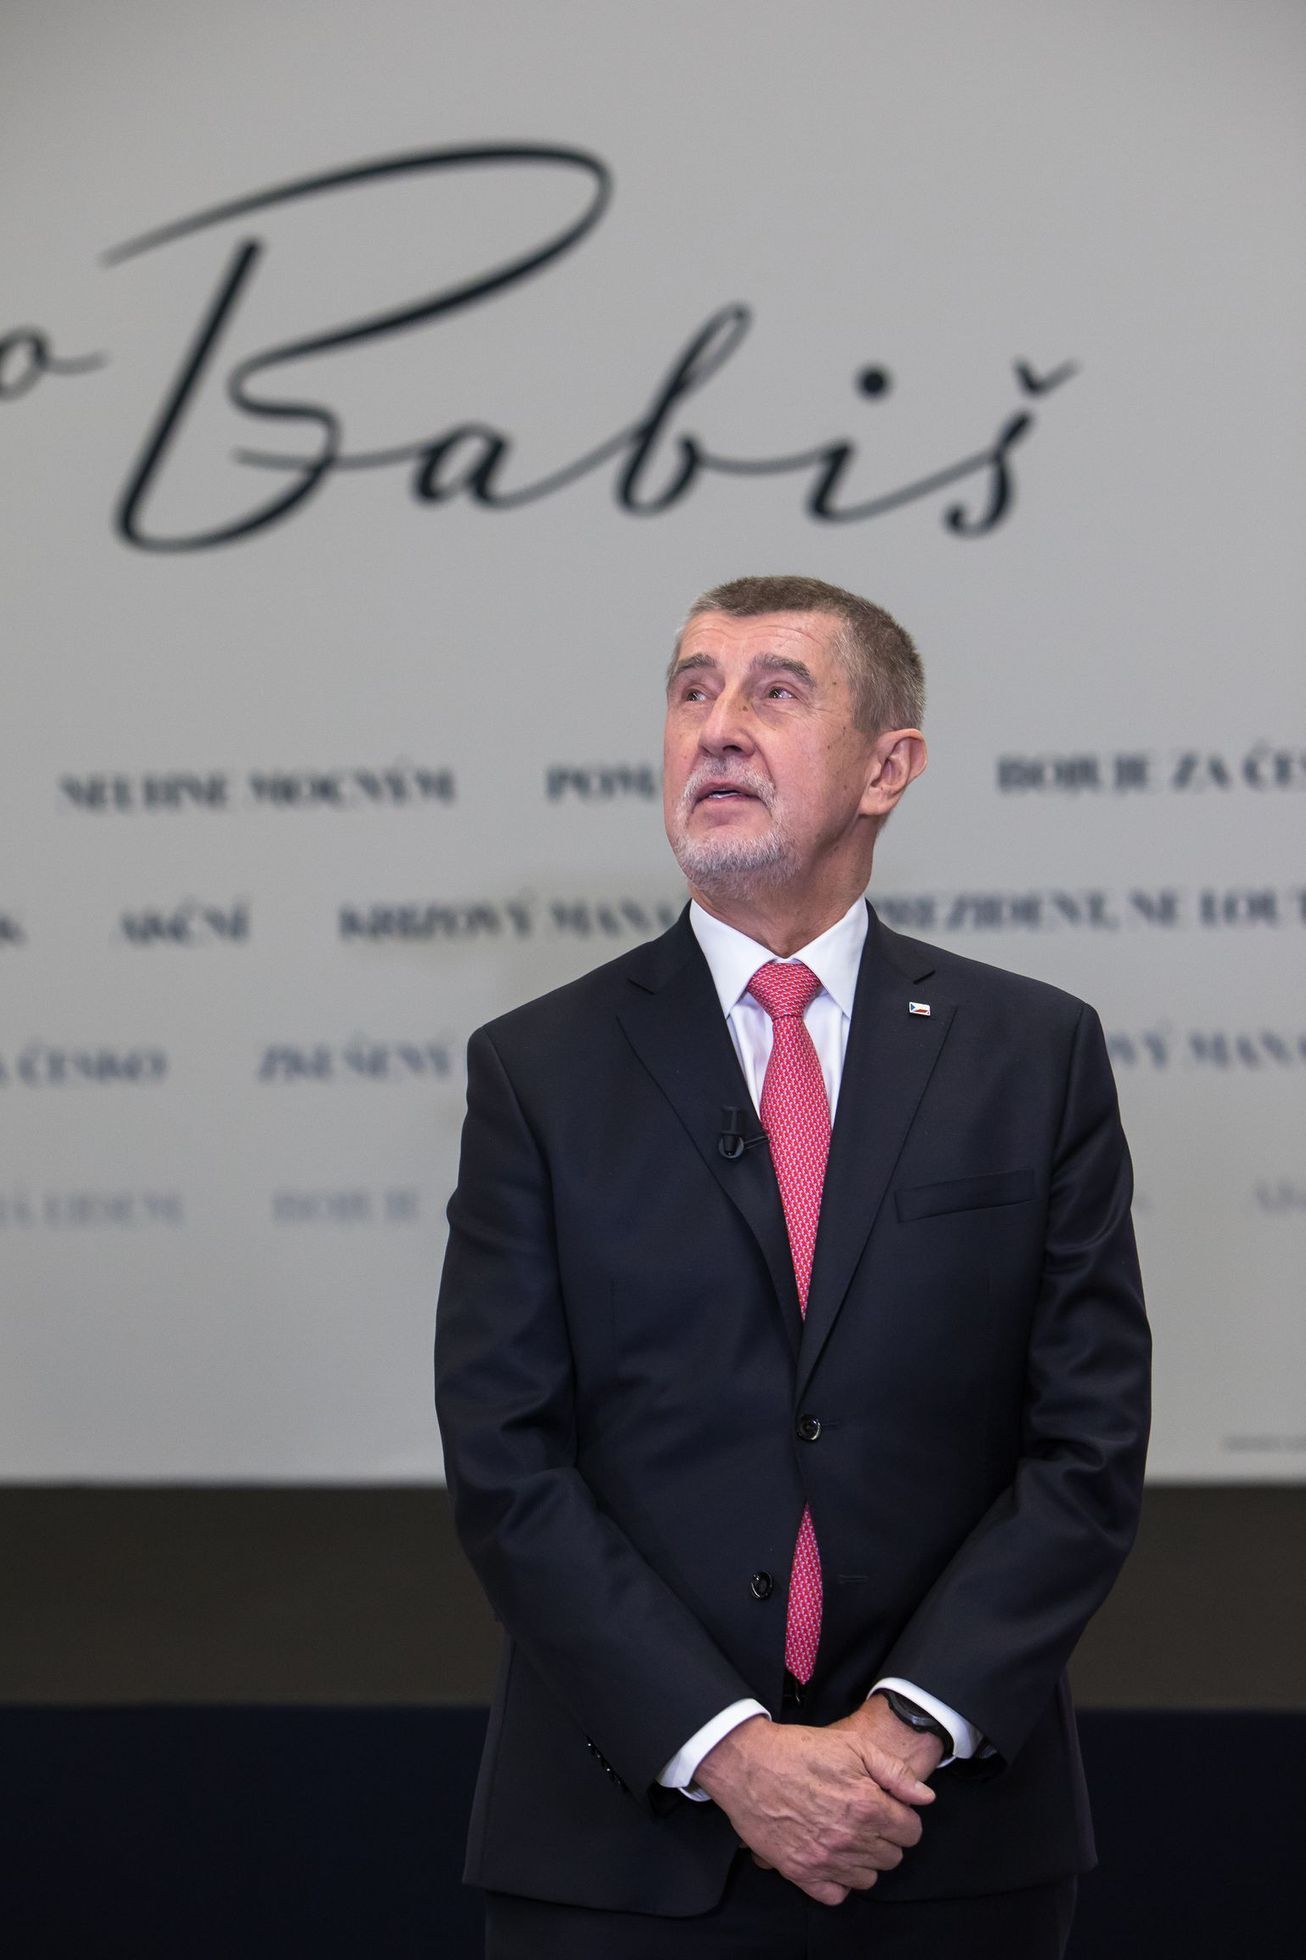 Babiš fait toujours l’objet d’une enquête pour blanchiment d’argent et évasion fiscale, a déclaré le Français